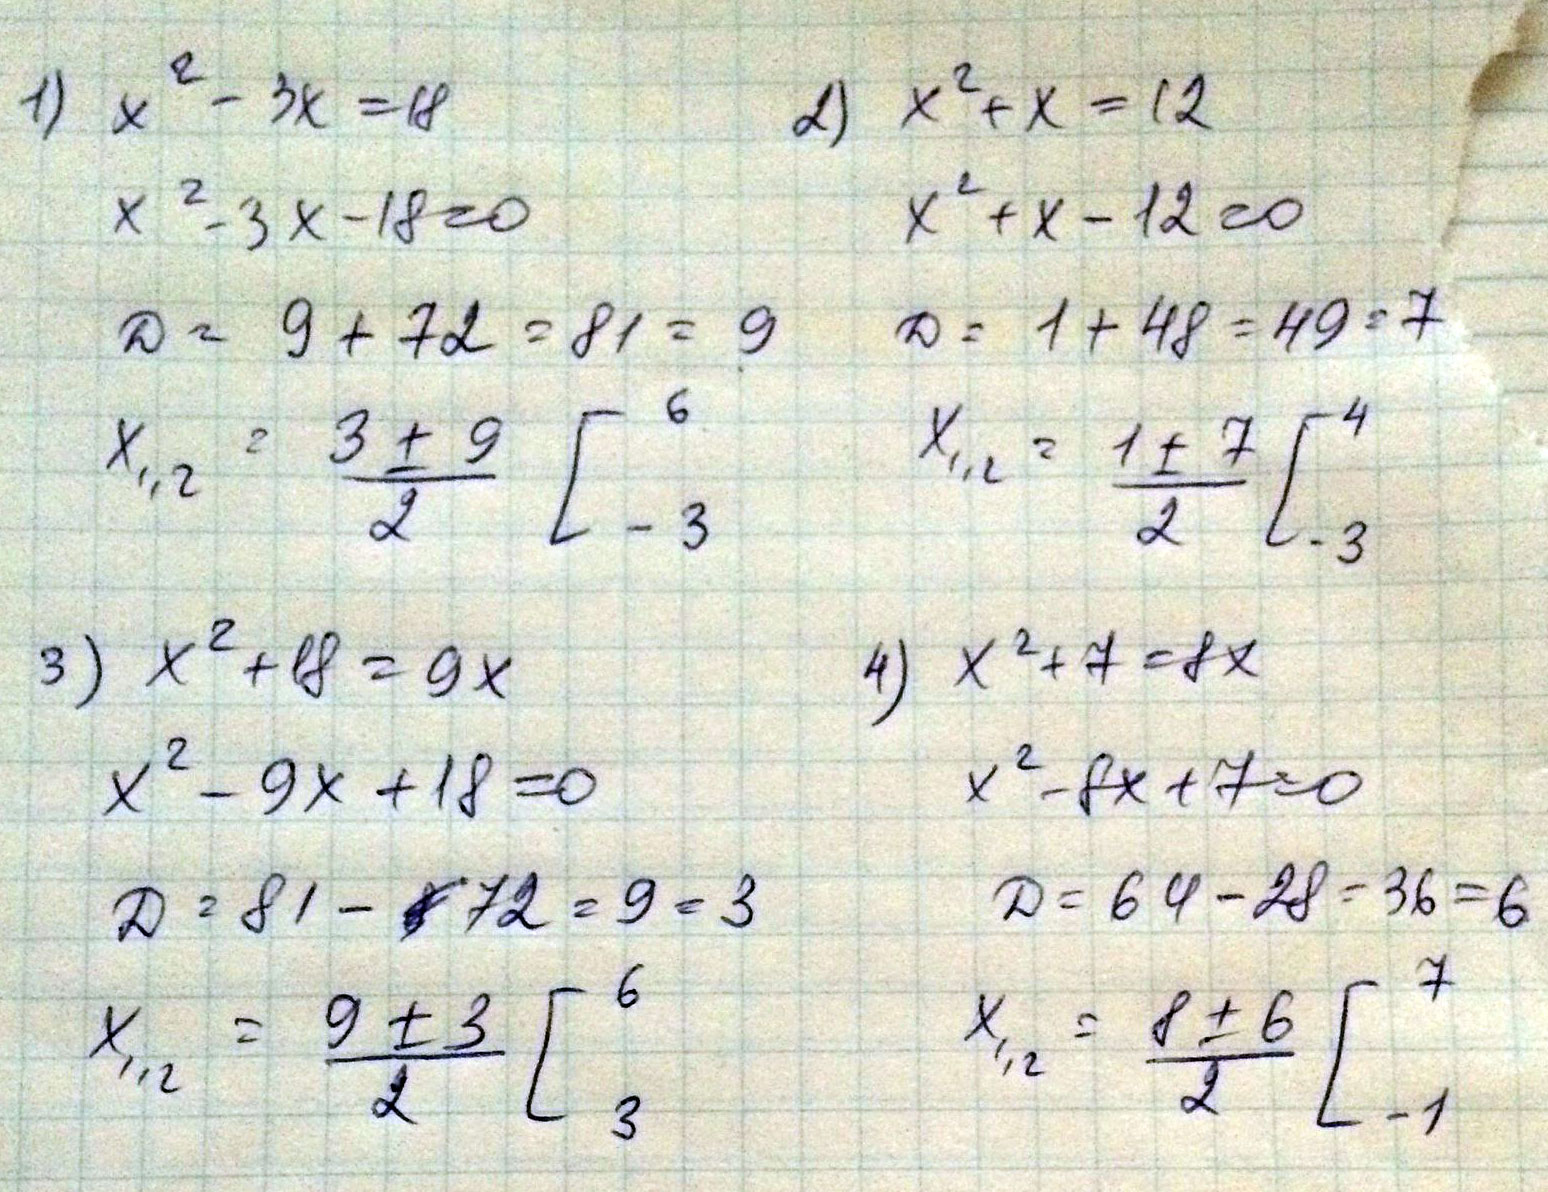 3x 1 7 8x 1 8. 3x в квадрате - 6x. X2+x-2 дискриминант. 7x в квадрате-6x-1=0. Решение 3x в квадрате-2x-3=0.